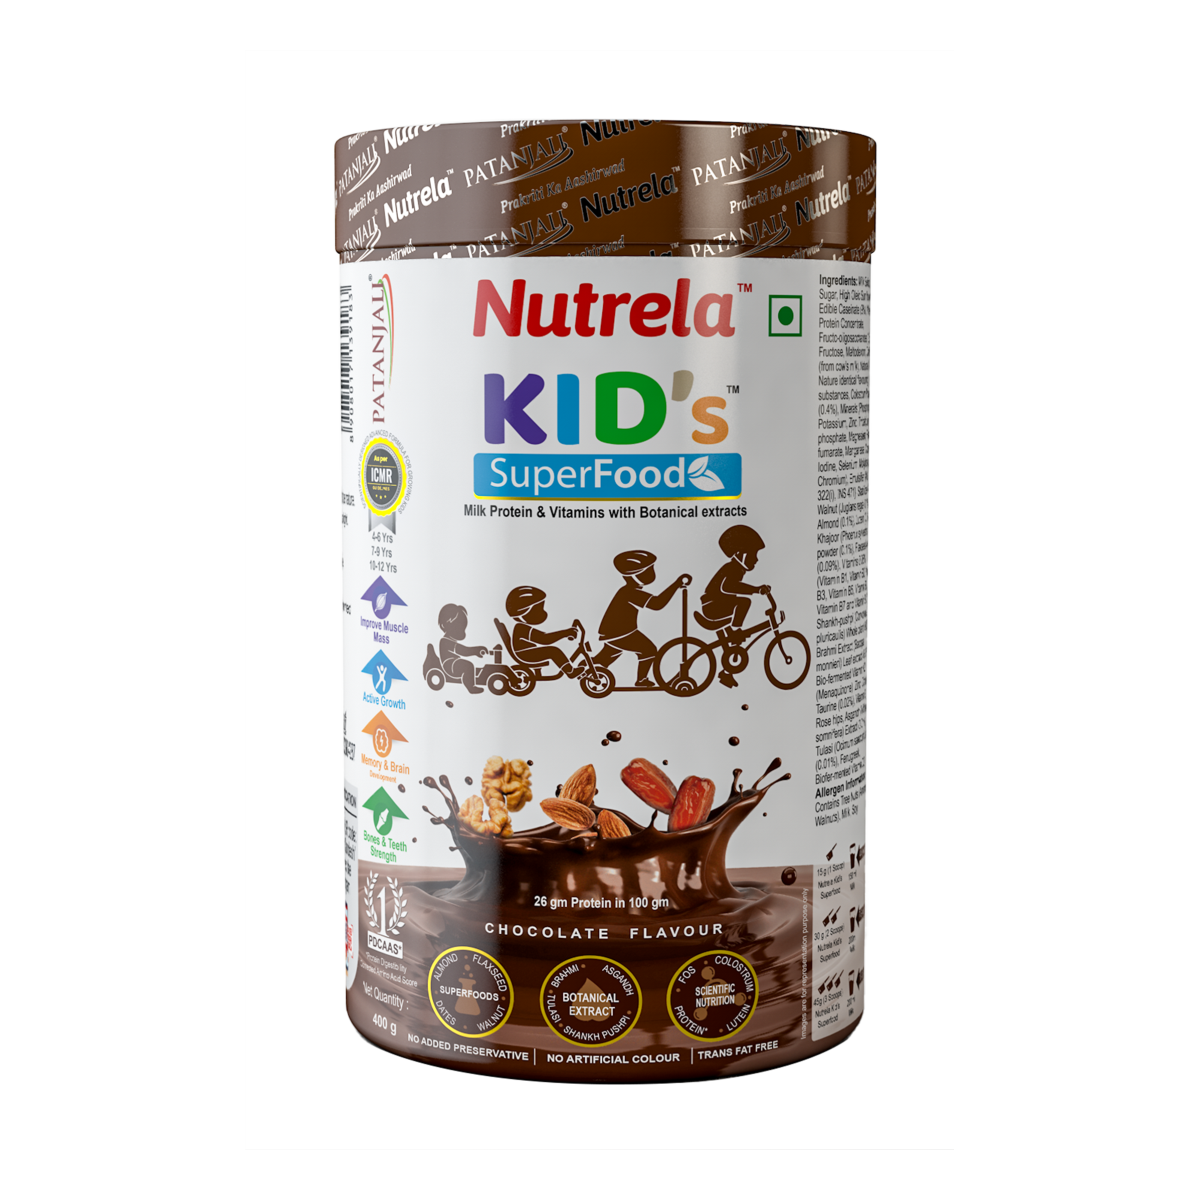 Patanjali Nutrela Kid's Superfood